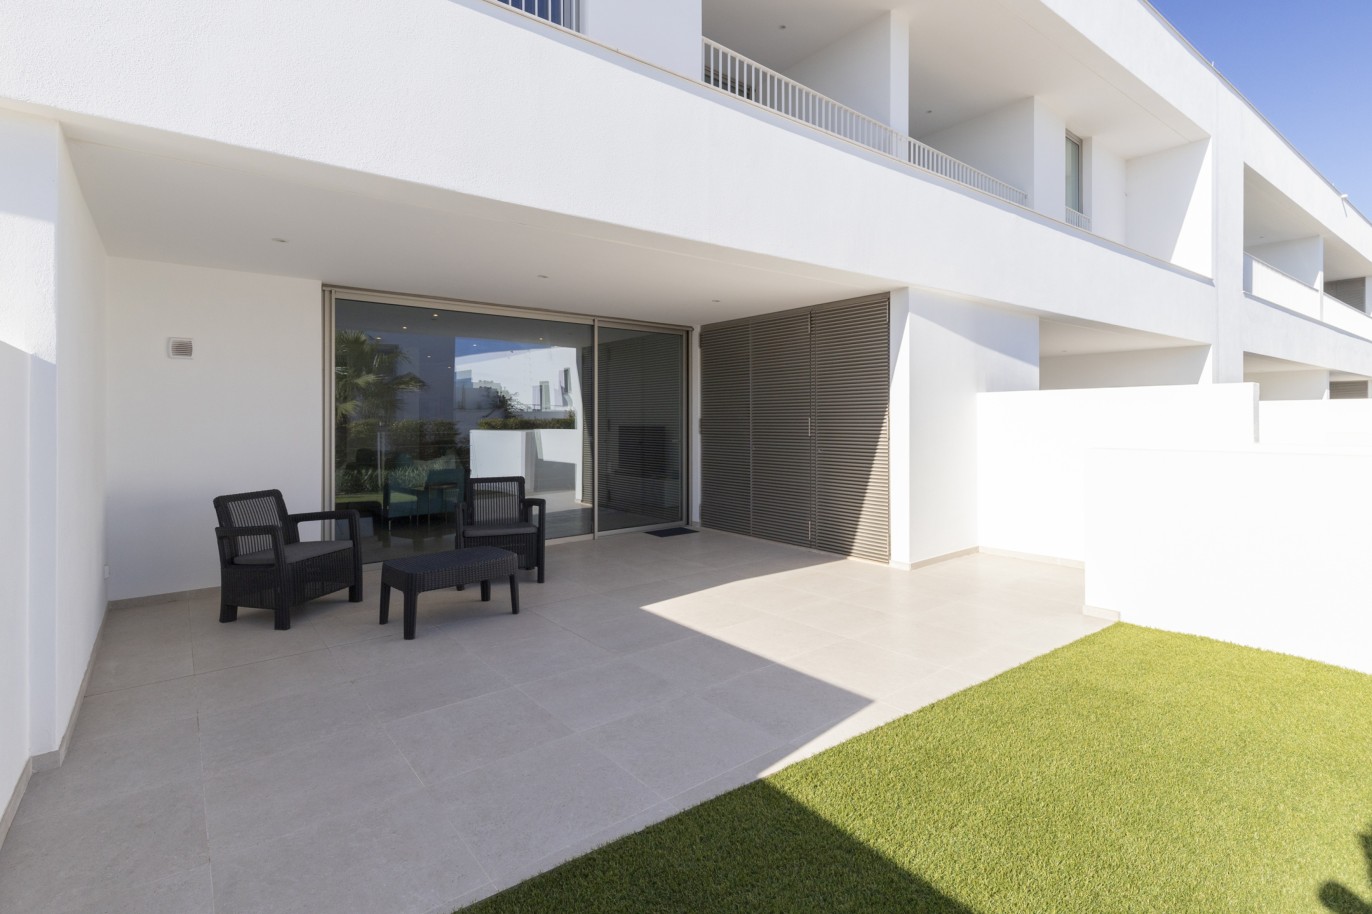 Moradia V3 inserida em condomínio privado, para venda, em Lagos, Algarve_217639